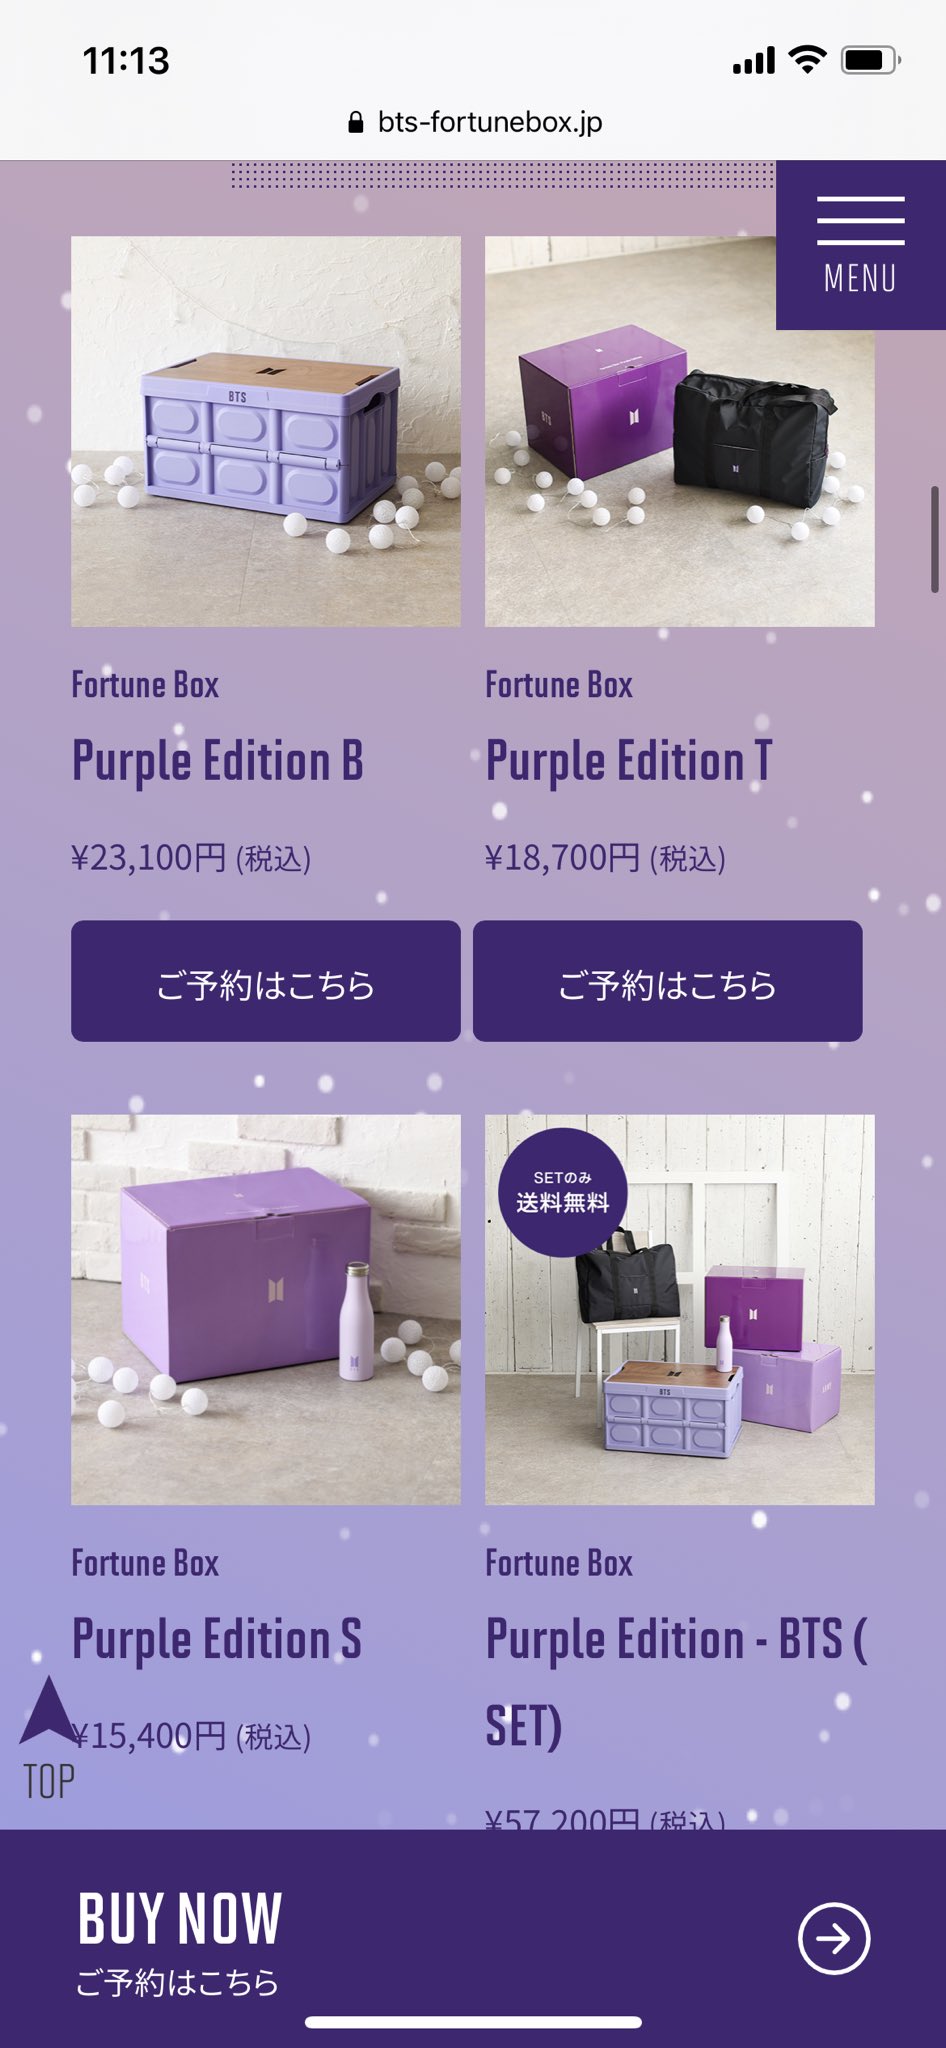 BTS Fortune Box : Purple Edition S - アイドルグッズ